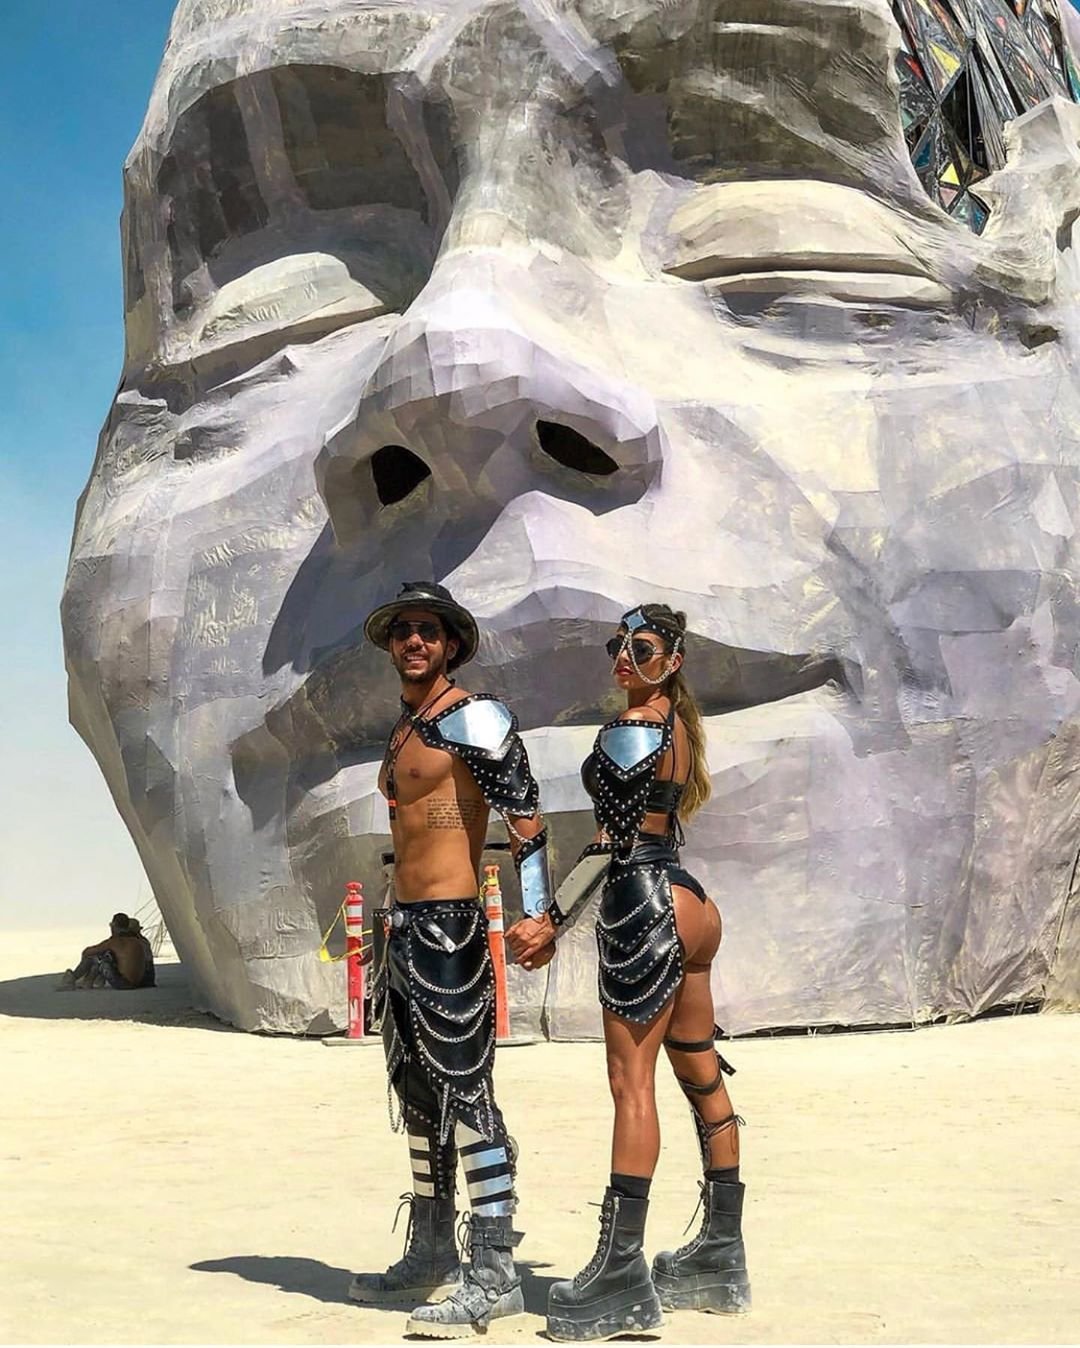 Нереальной красоты скульптуры и голые тела на фестивале Burning Man 2019 - фото 448439